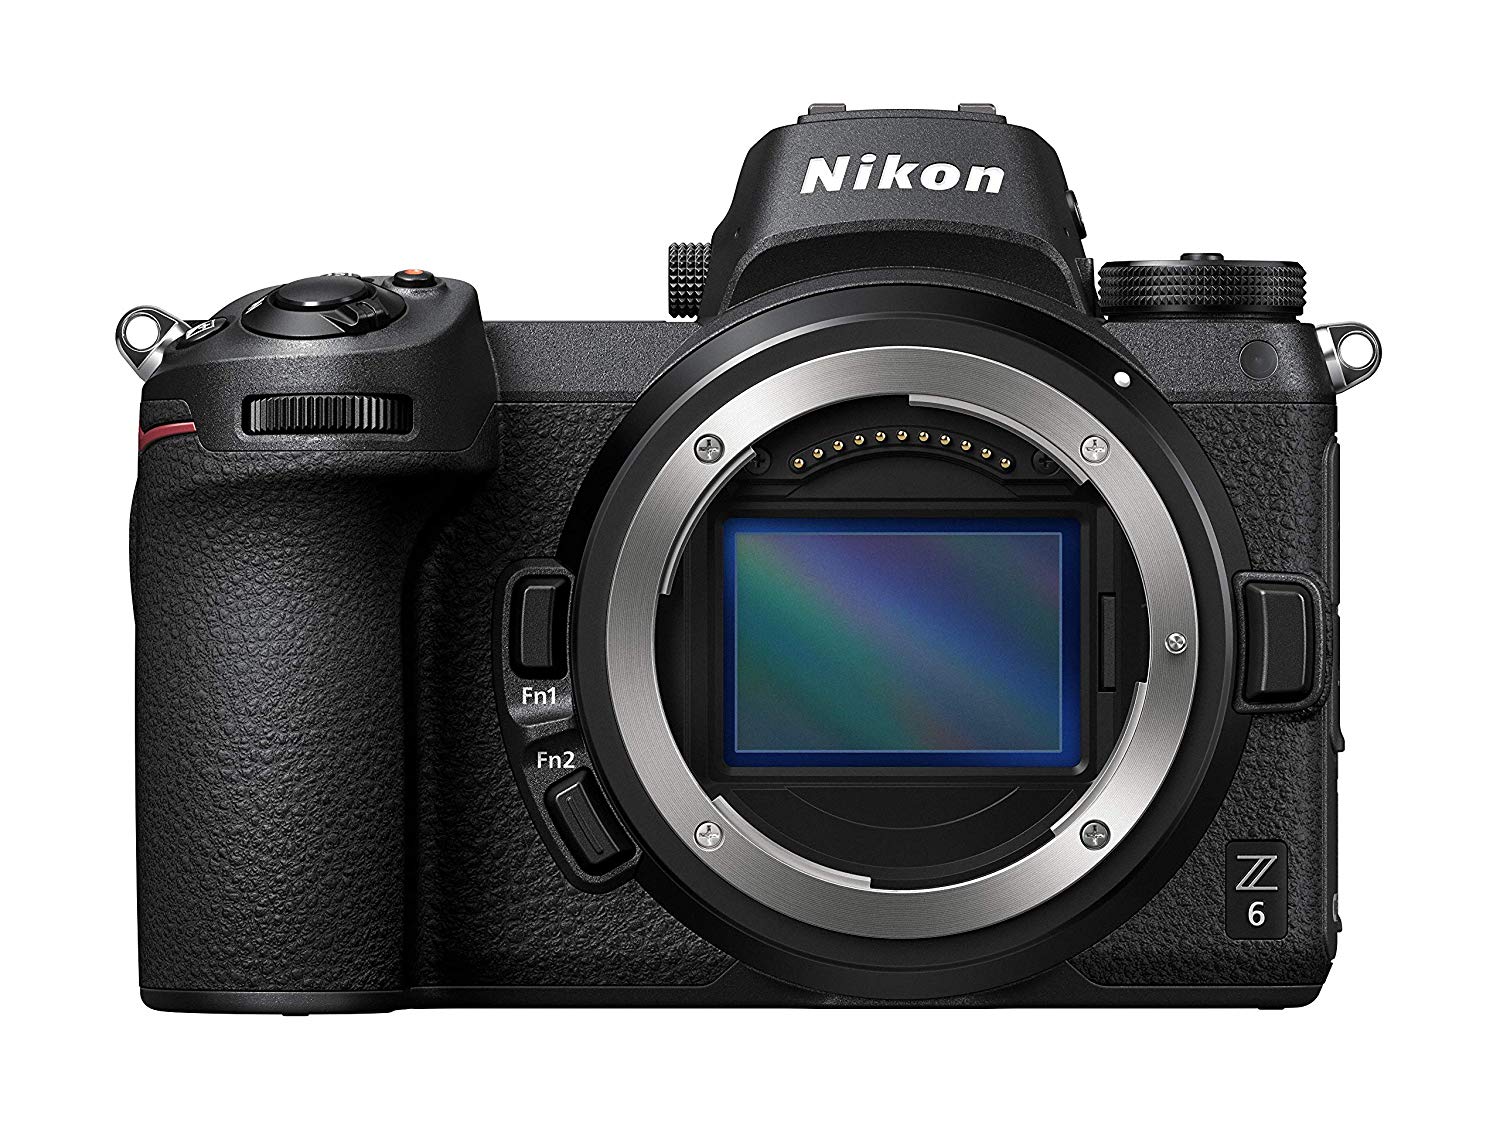 Nikon Corpo da câmera sem espelho no formato  Z6 FX